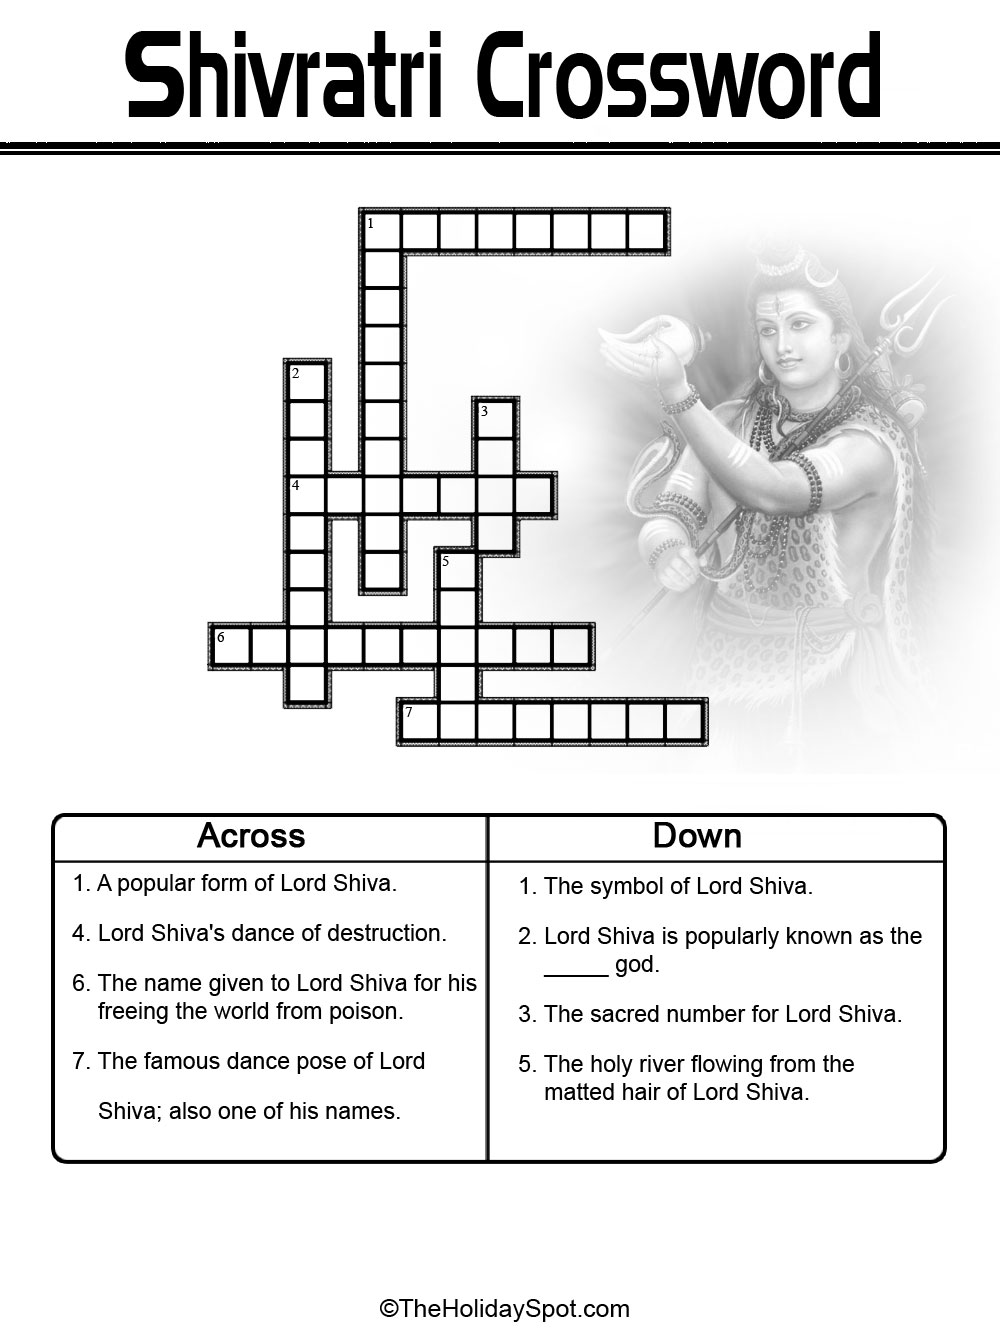 Shivratri Crossword Puzzle - Black and White